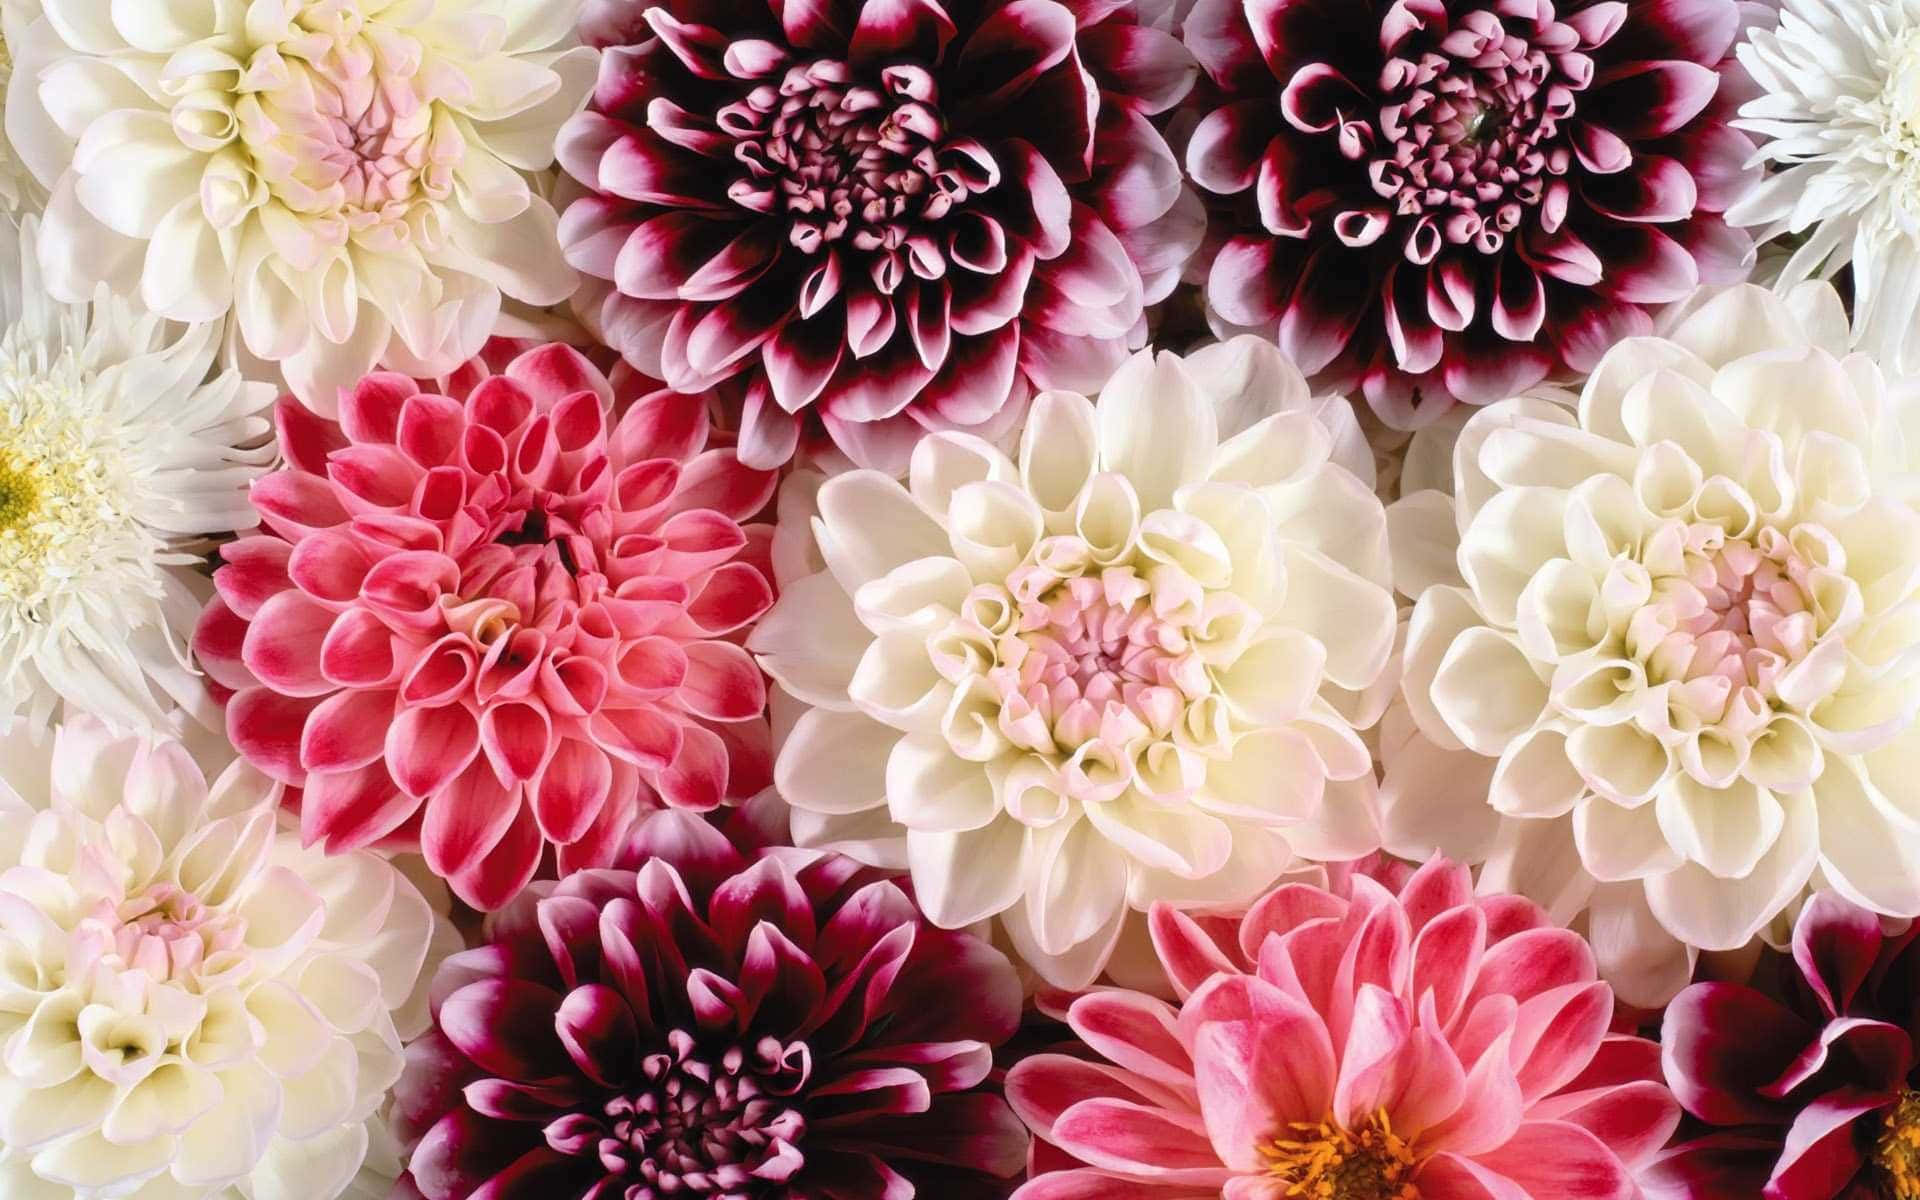 Helleund Bunte Blumen Auf Einem Atemberaubenden Desktop-hintergrund Wallpaper